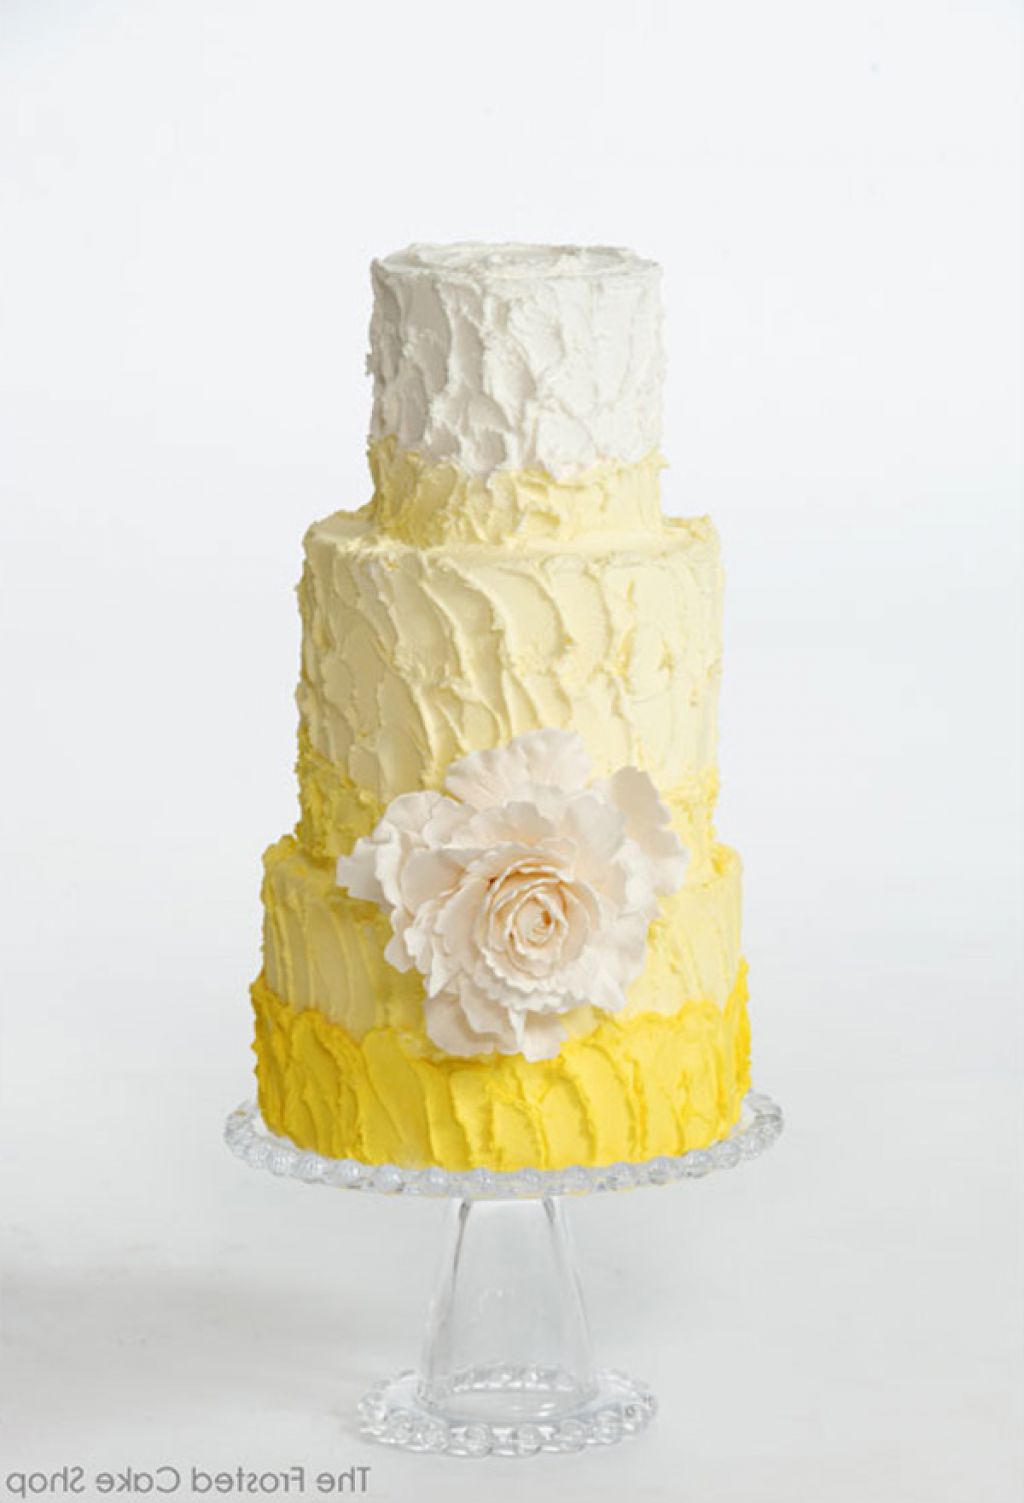 2.) Ennél a tortánál inkább a színárnyalatok a precízen kidolgozottak, maga a technika nem túl bonyolult.<br />(belleandchic.com)